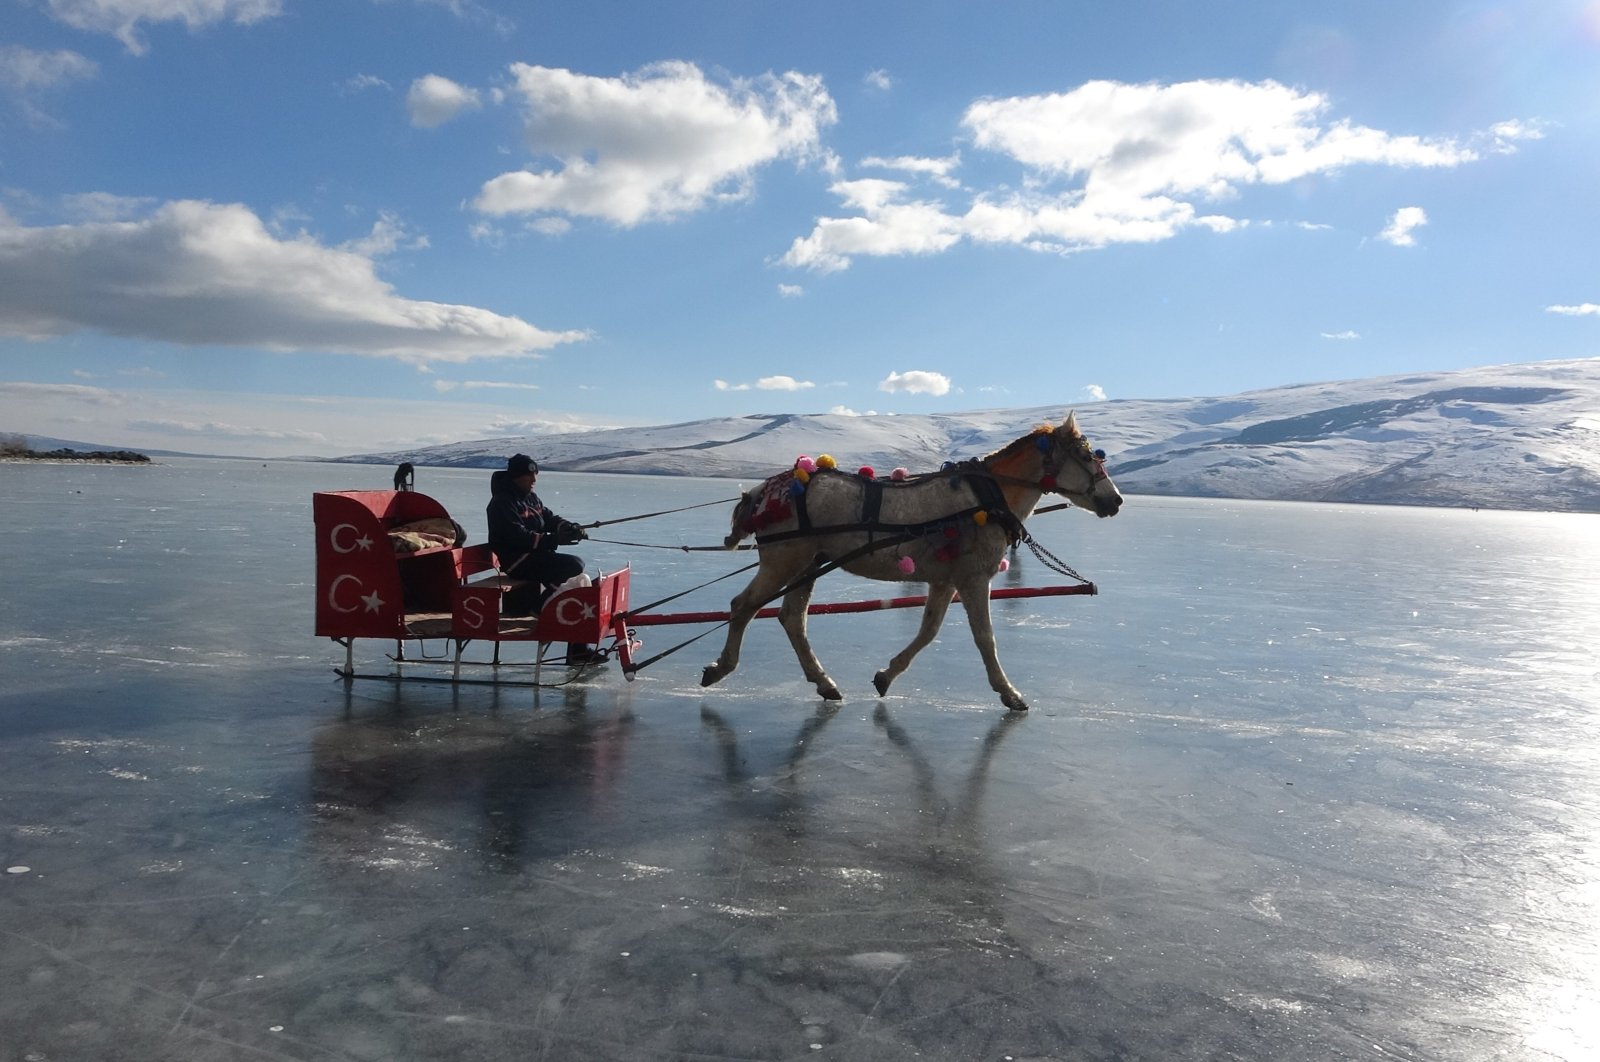 Eastern Anatolian Çıldır, Balık lakes’ winter beauty attract visitors